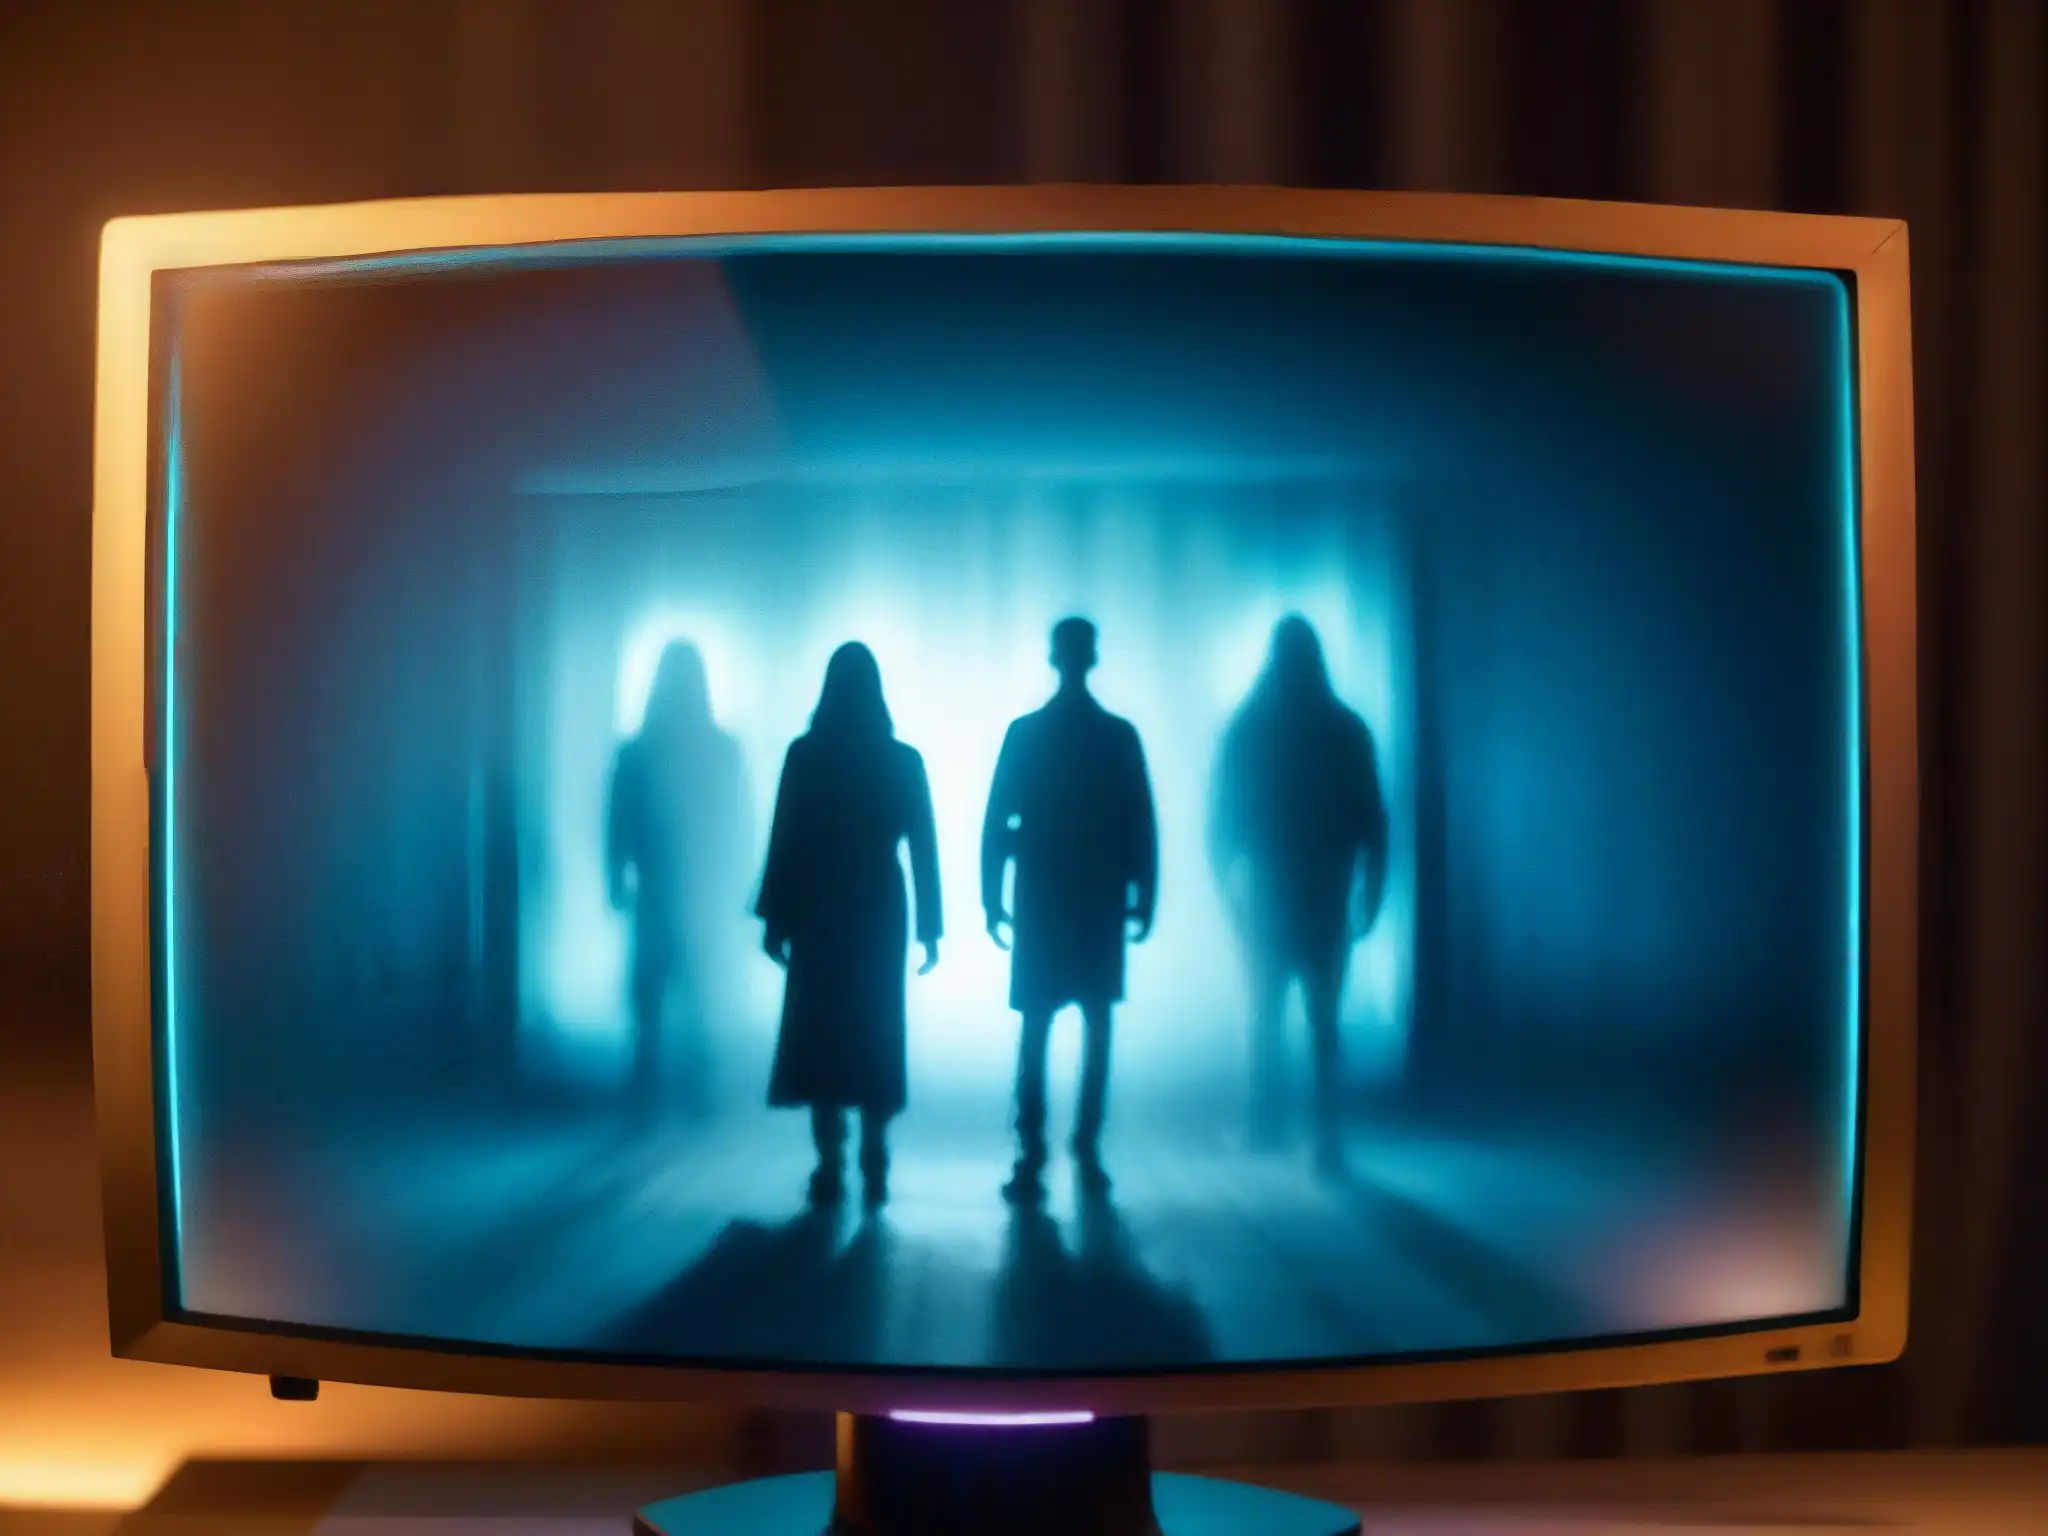 Una imagen inquietante de una pantalla de computadora con figuras fantasmales borrosas emergiendo, iluminando el entorno con un brillo misterioso